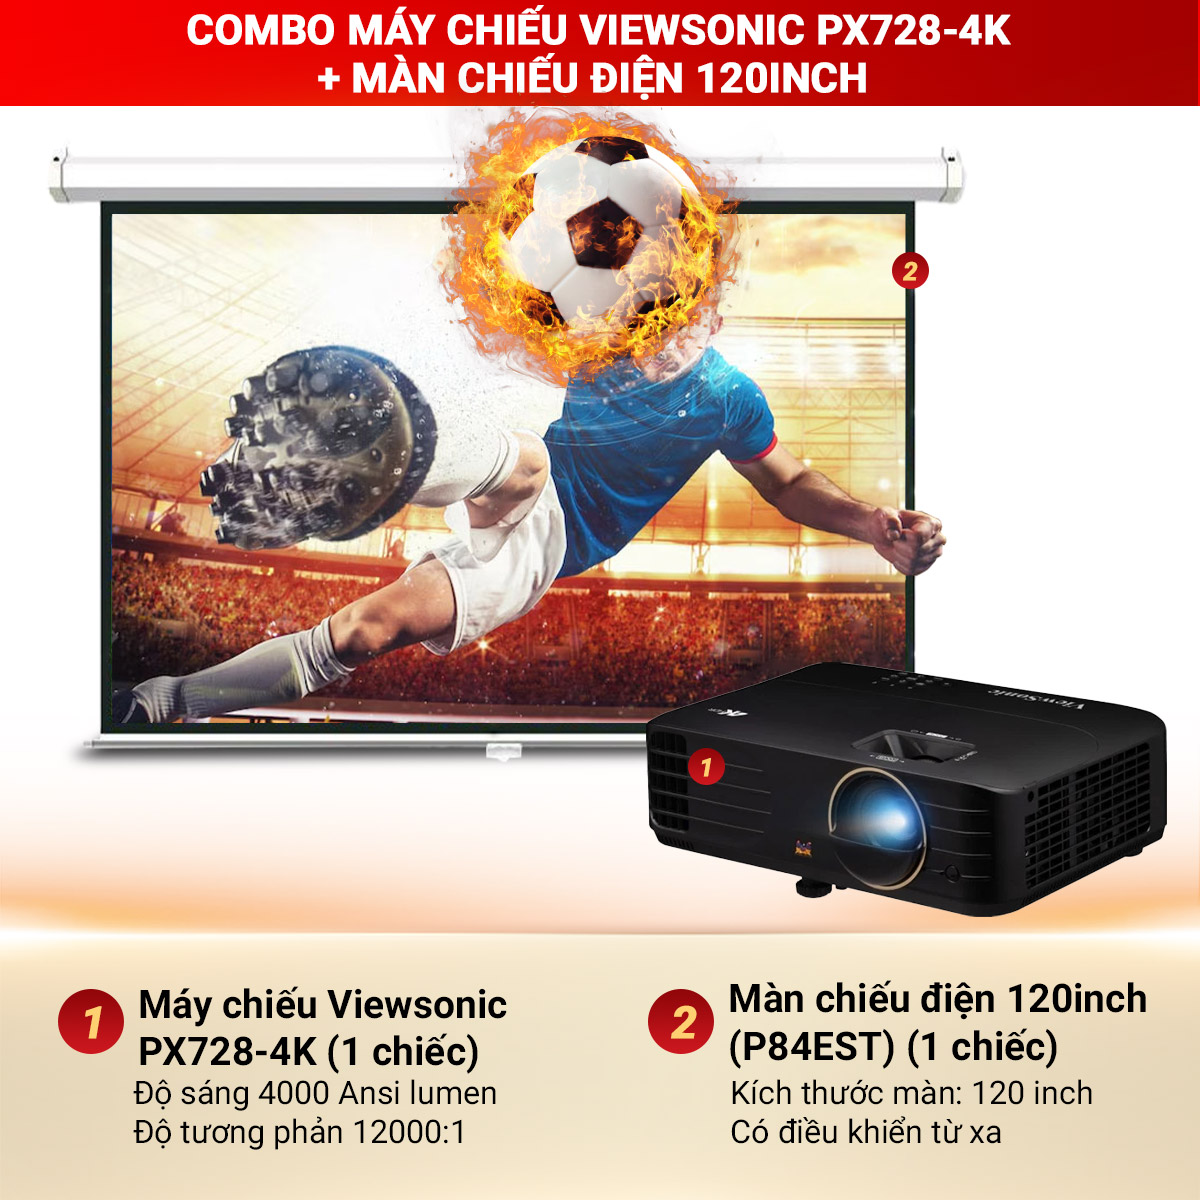 Combo máy chiếu Viewsonic PX728-4K + Màn chiếu điện 120 inch